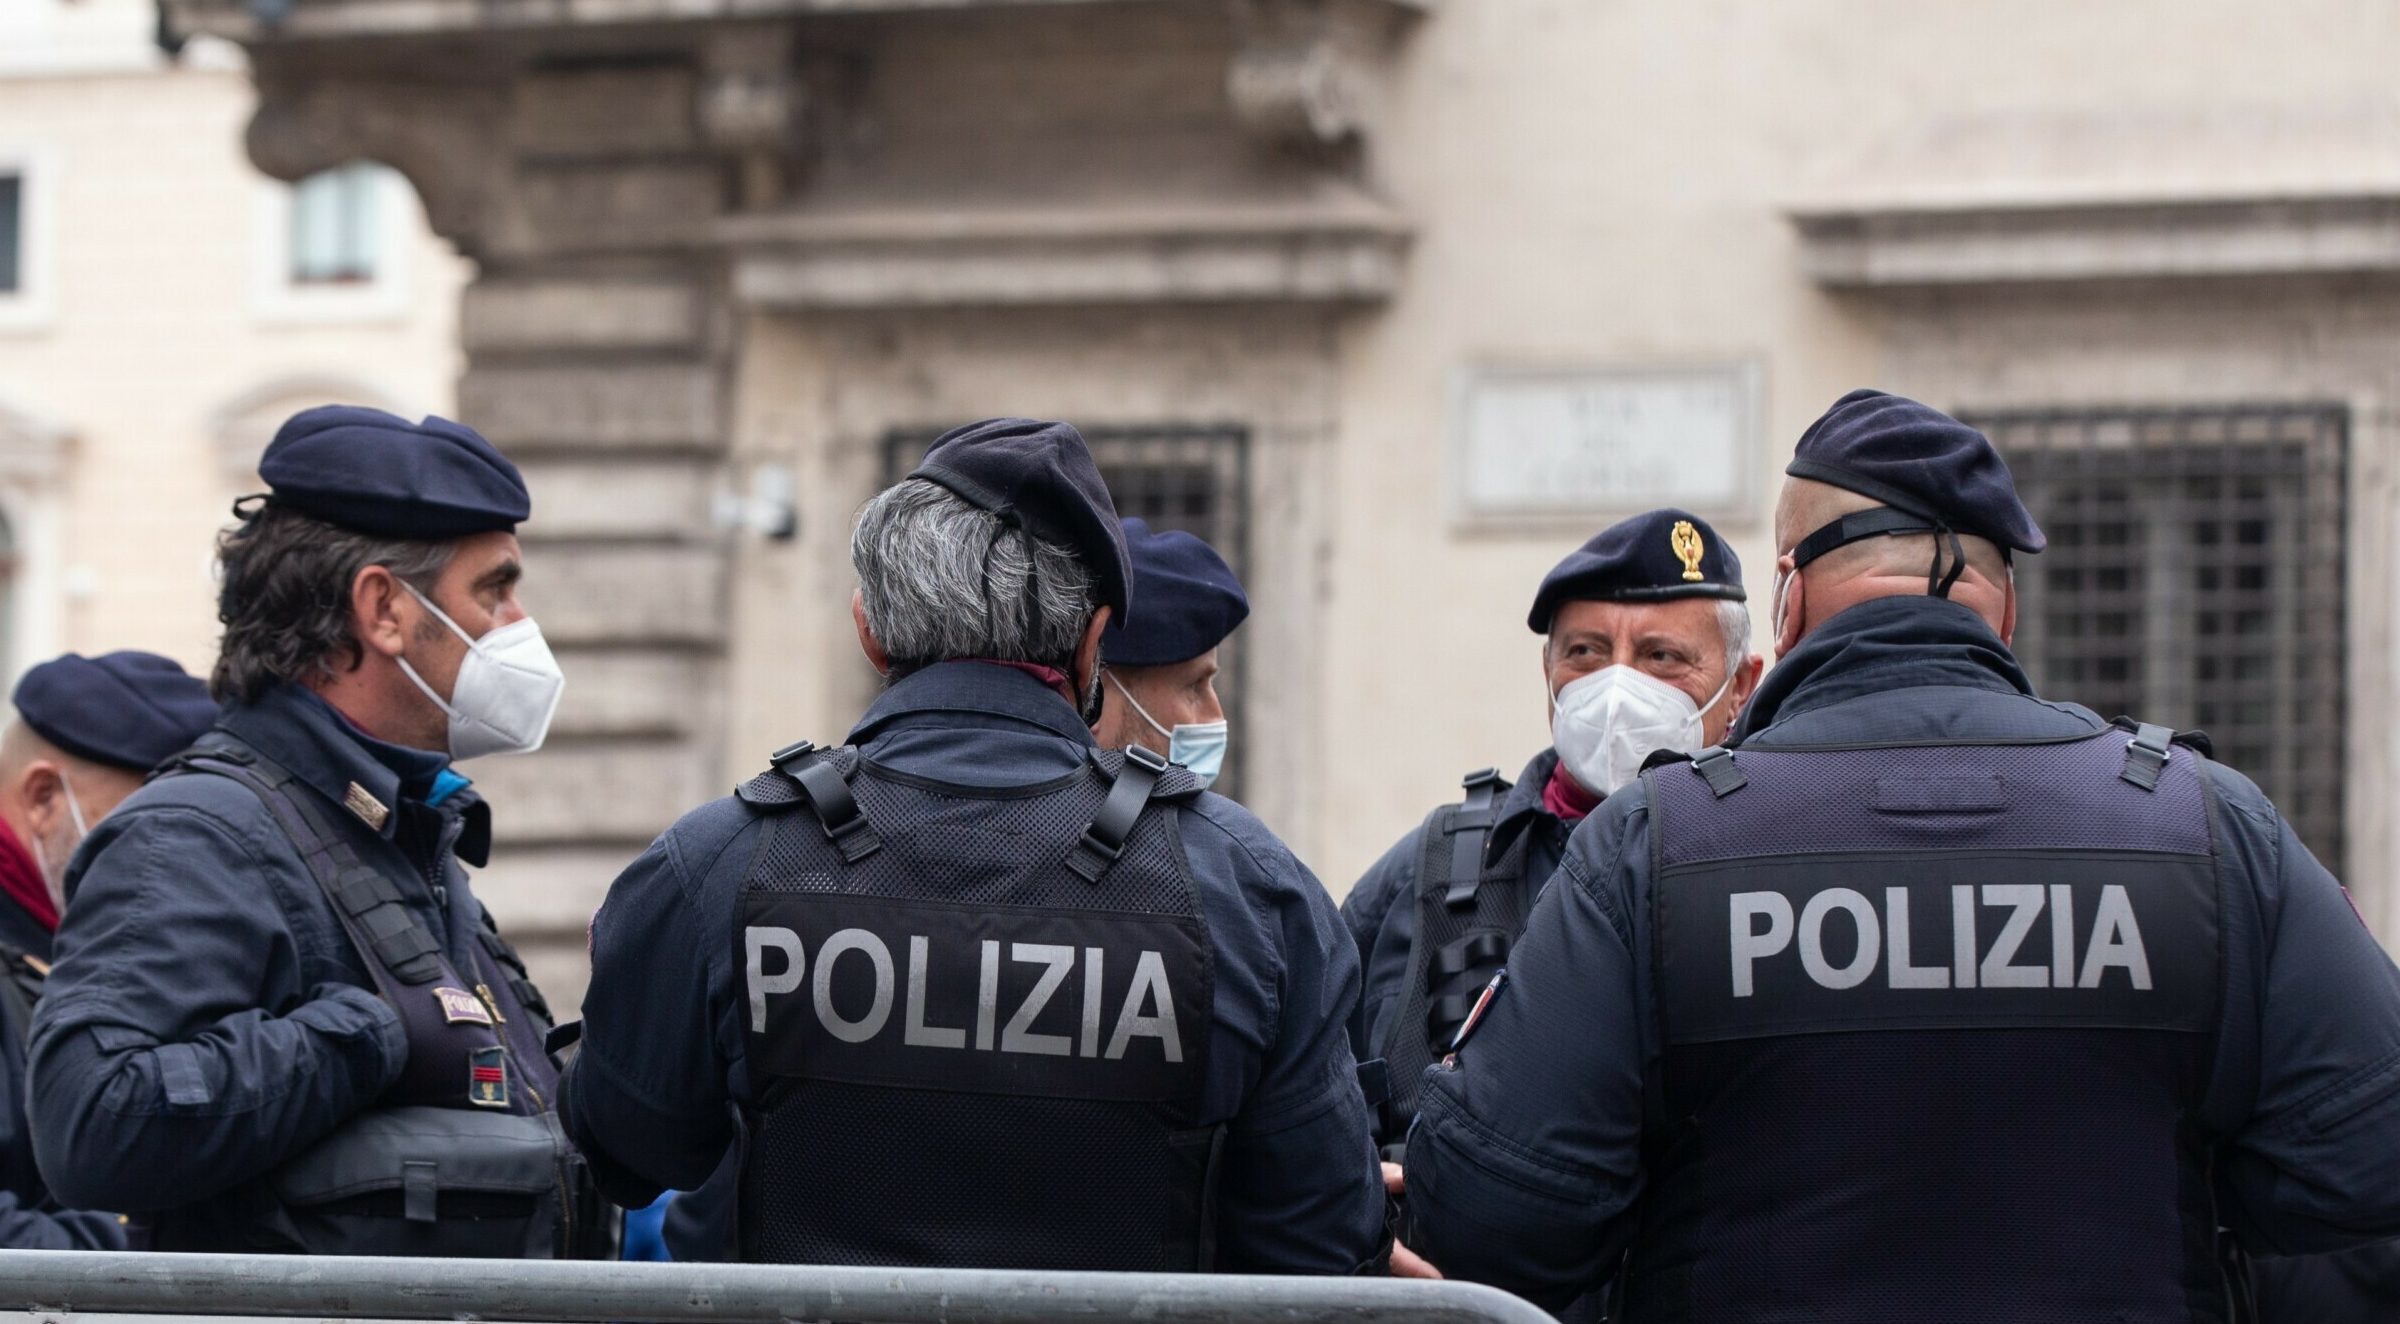 La Policía italiana lanza una gran operación para capturar al histórico jefe mafioso Matteo Messina Denaro